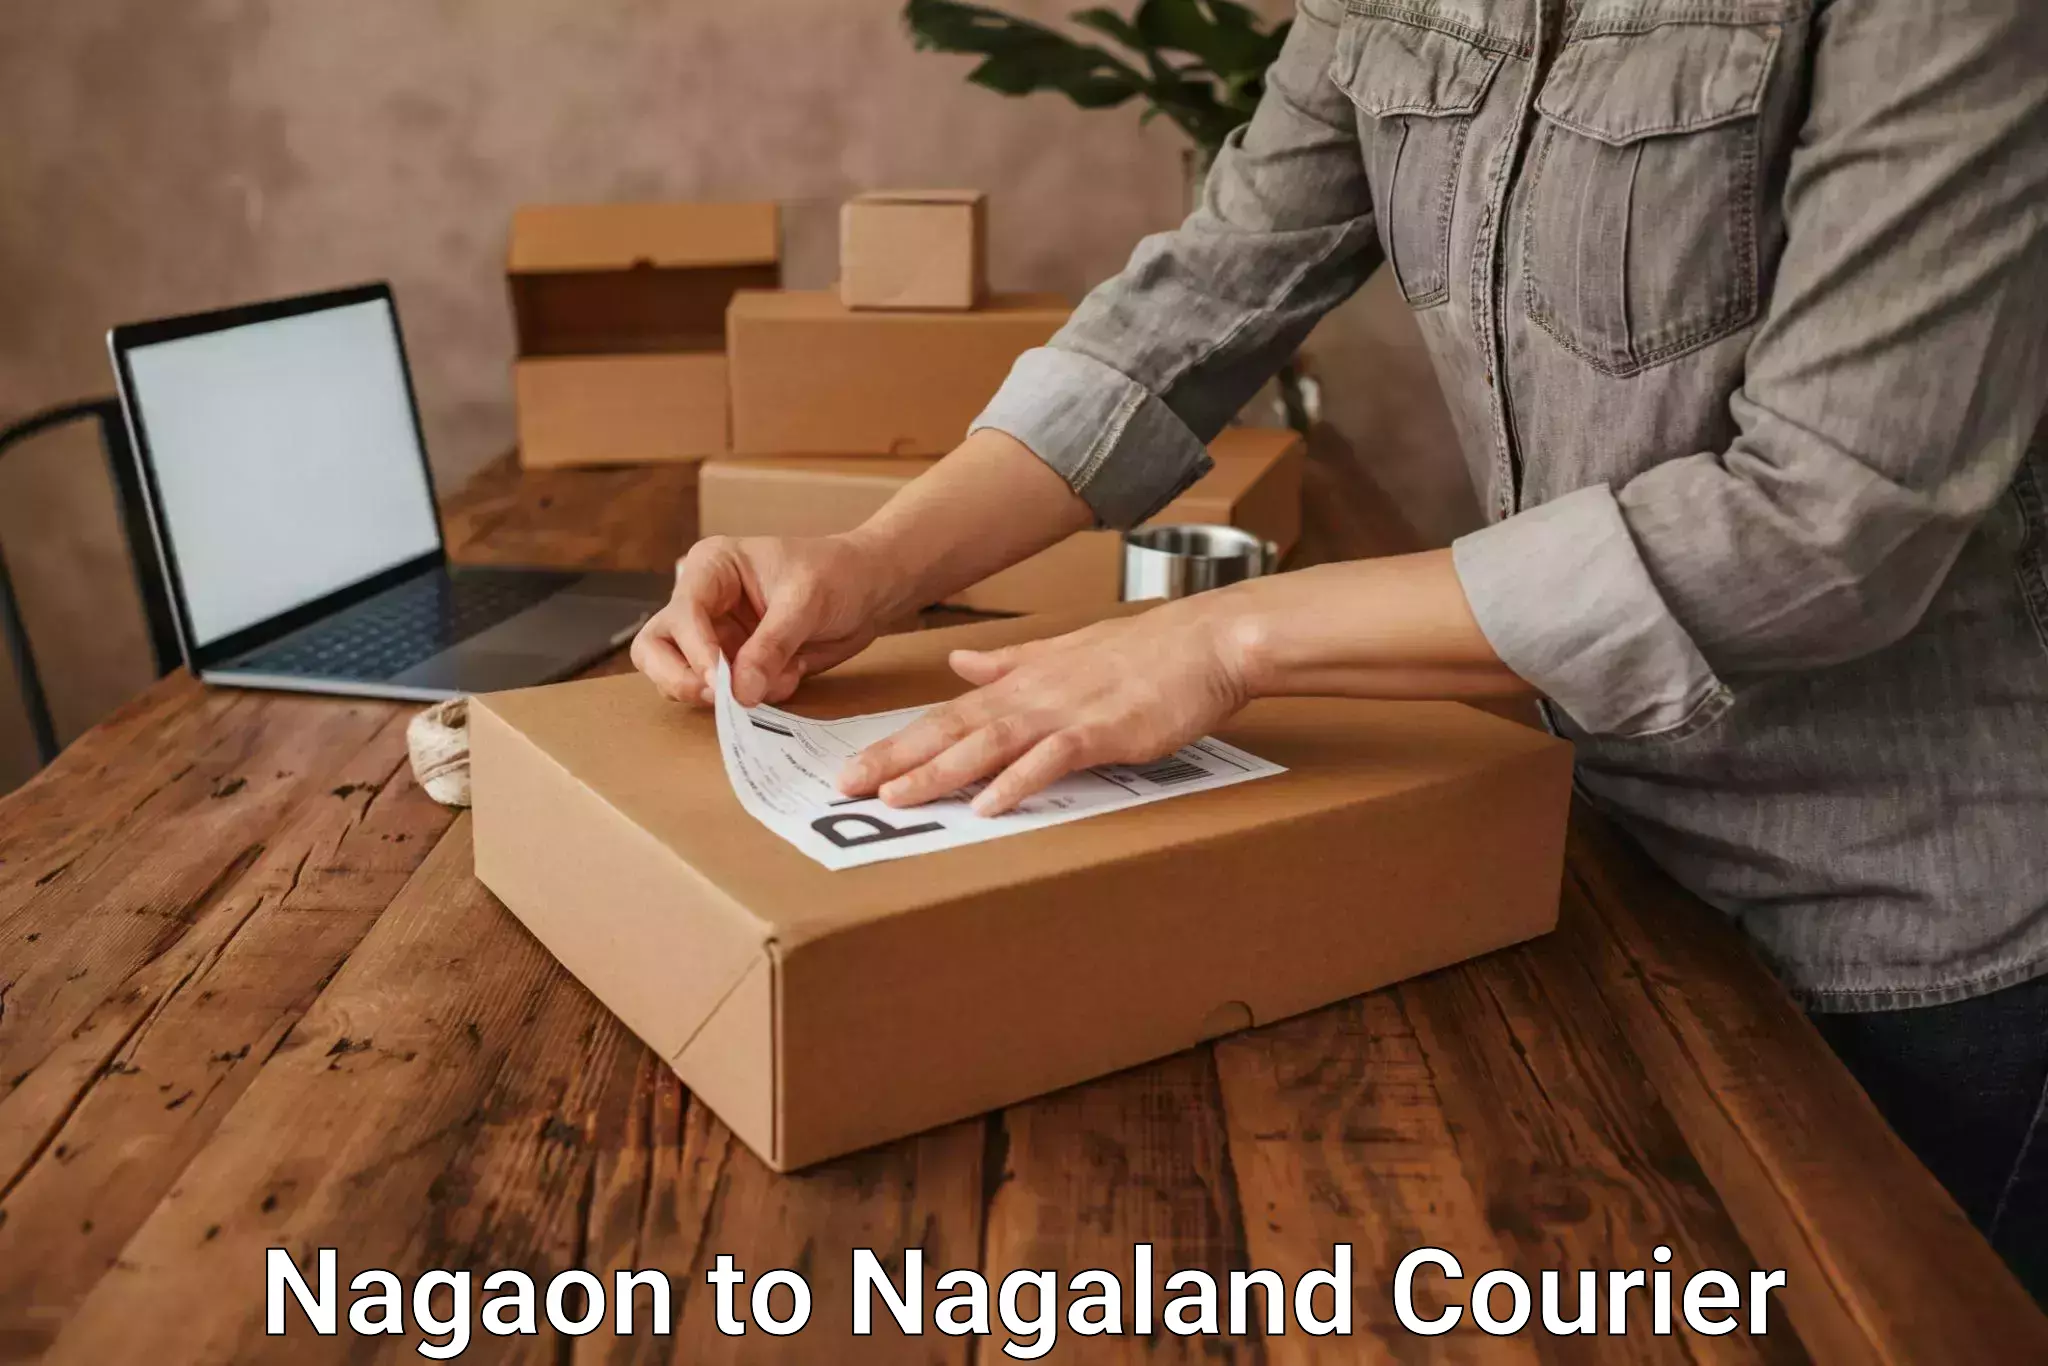 Courier service comparison Nagaon to Phek